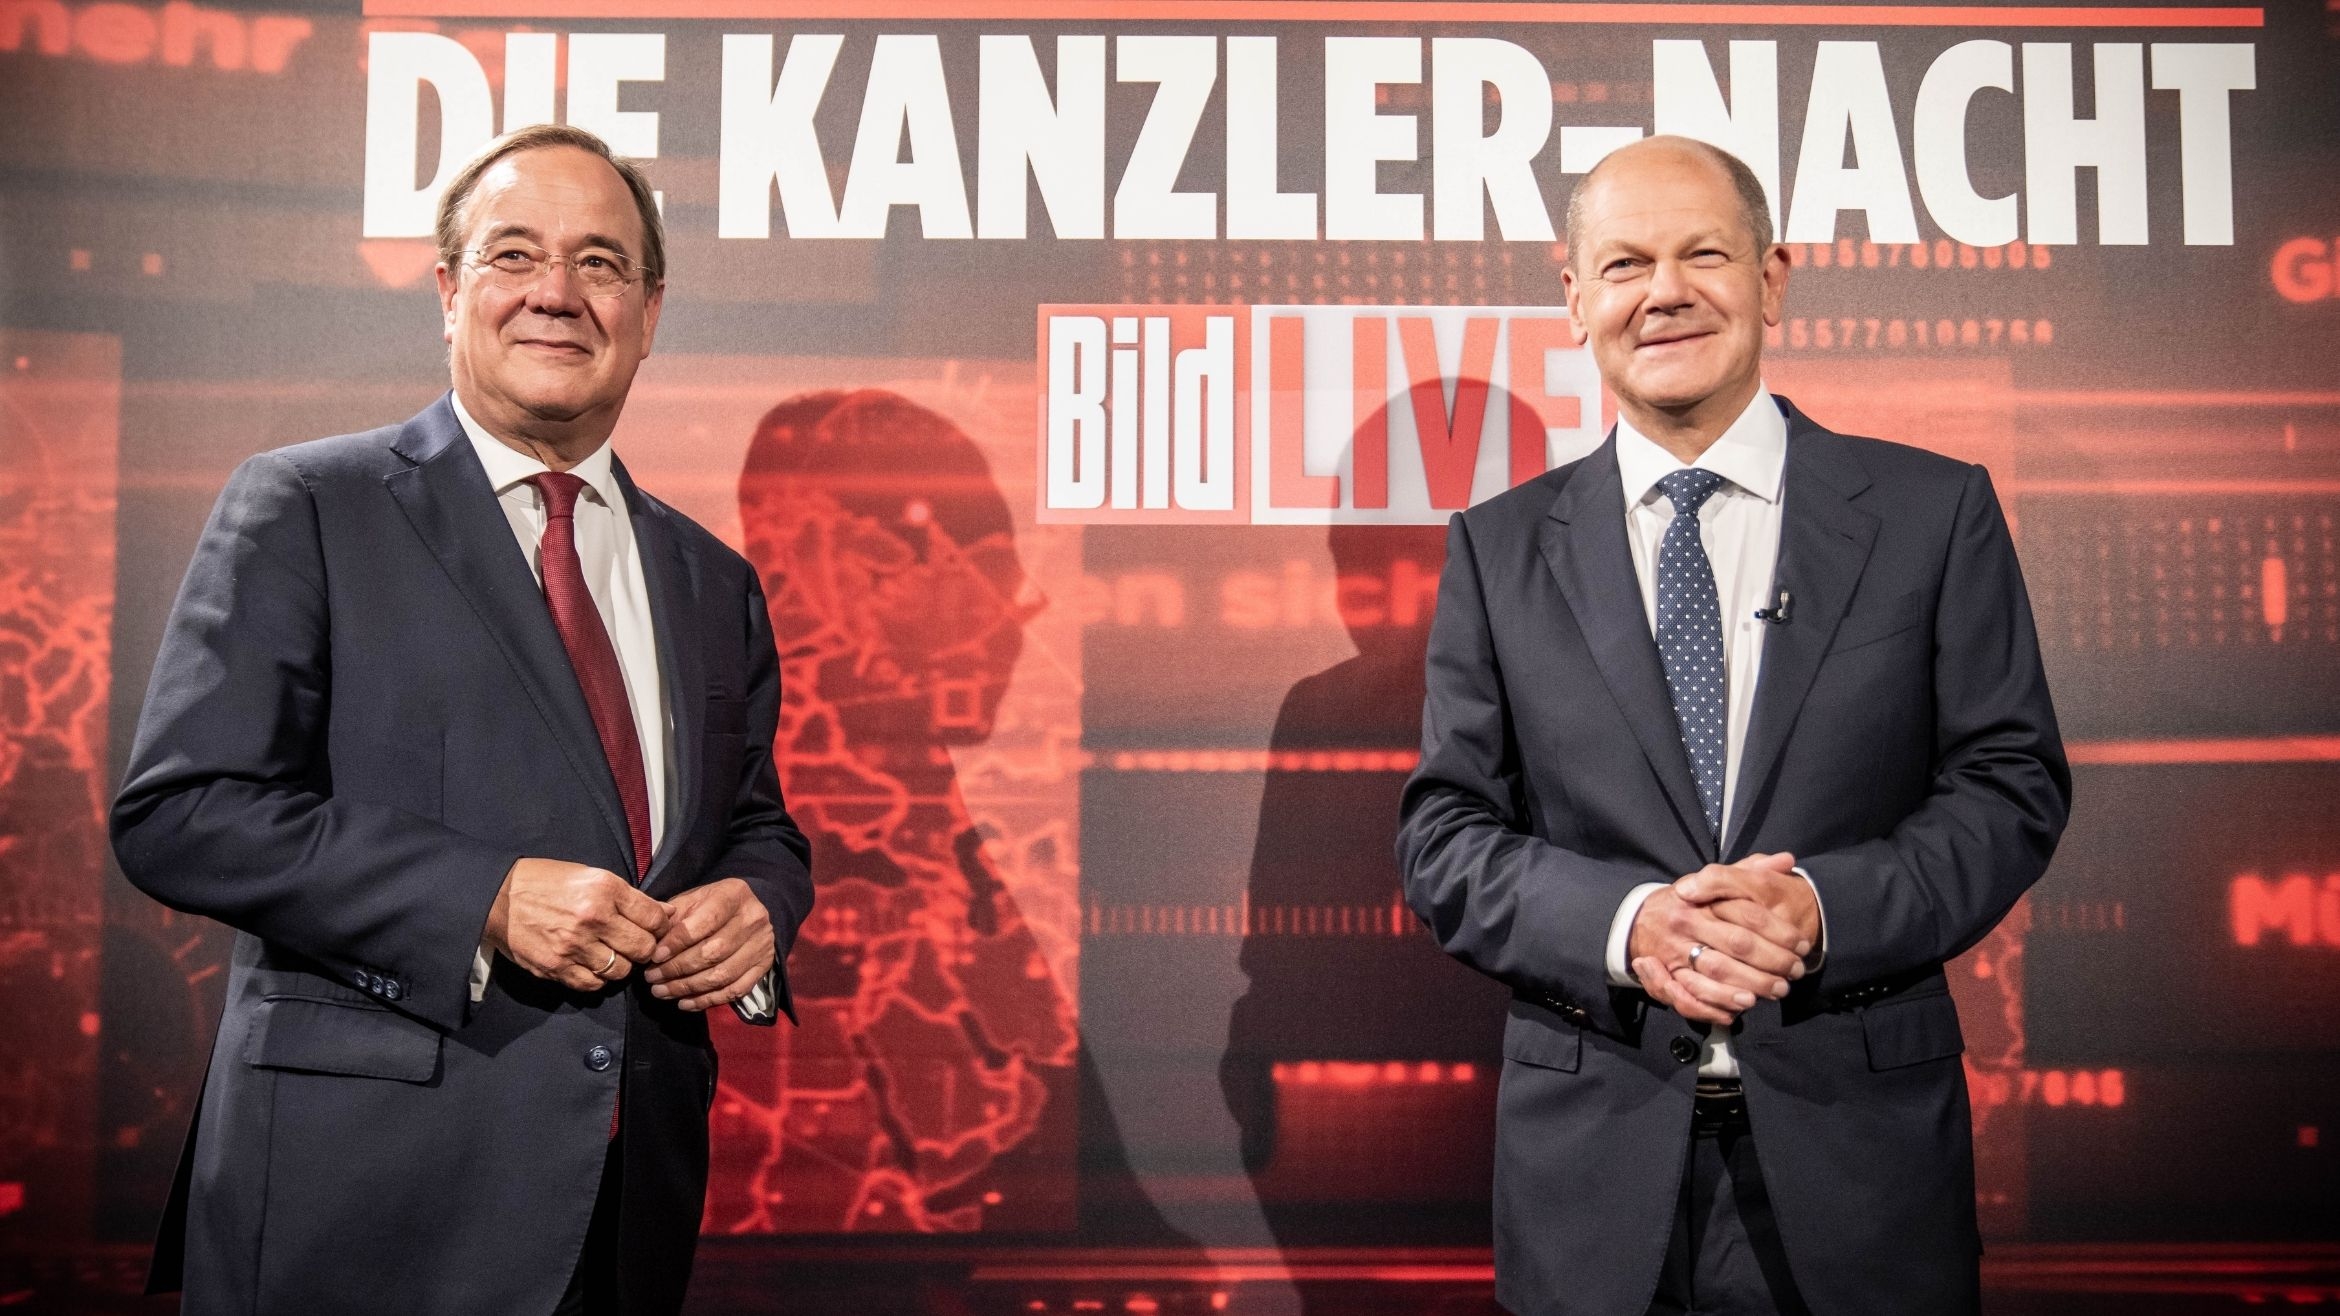 Die Kanzlerkandidaten von Union und SPD, Armin Laschet und Olaf Scholz, waren zum Start von Bild TV zu Gast –